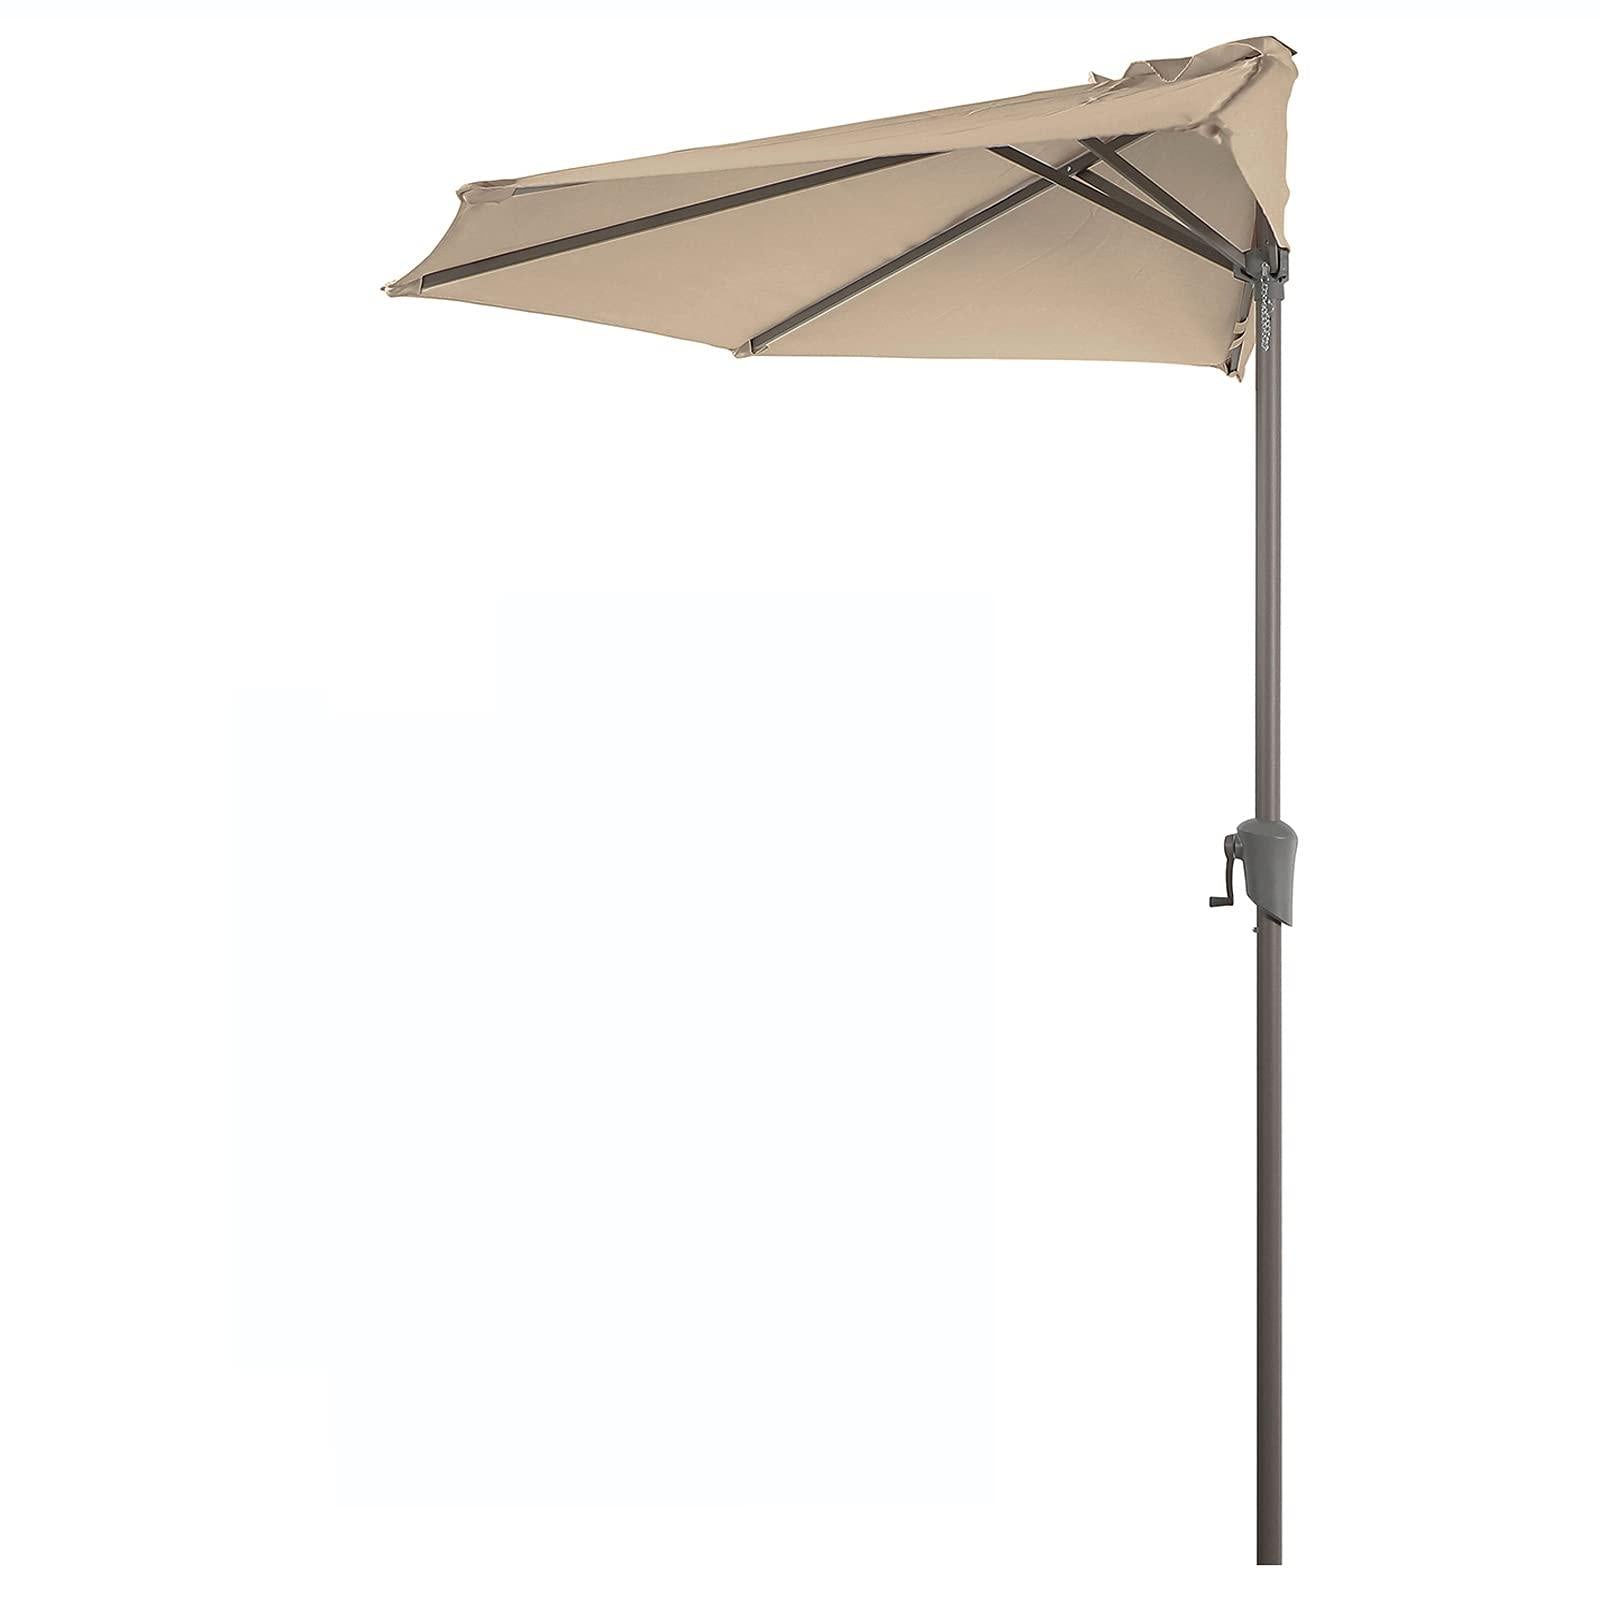 Breez 9' Half Round Patio Outdoor Umbrella with Crank nice#Color_beige